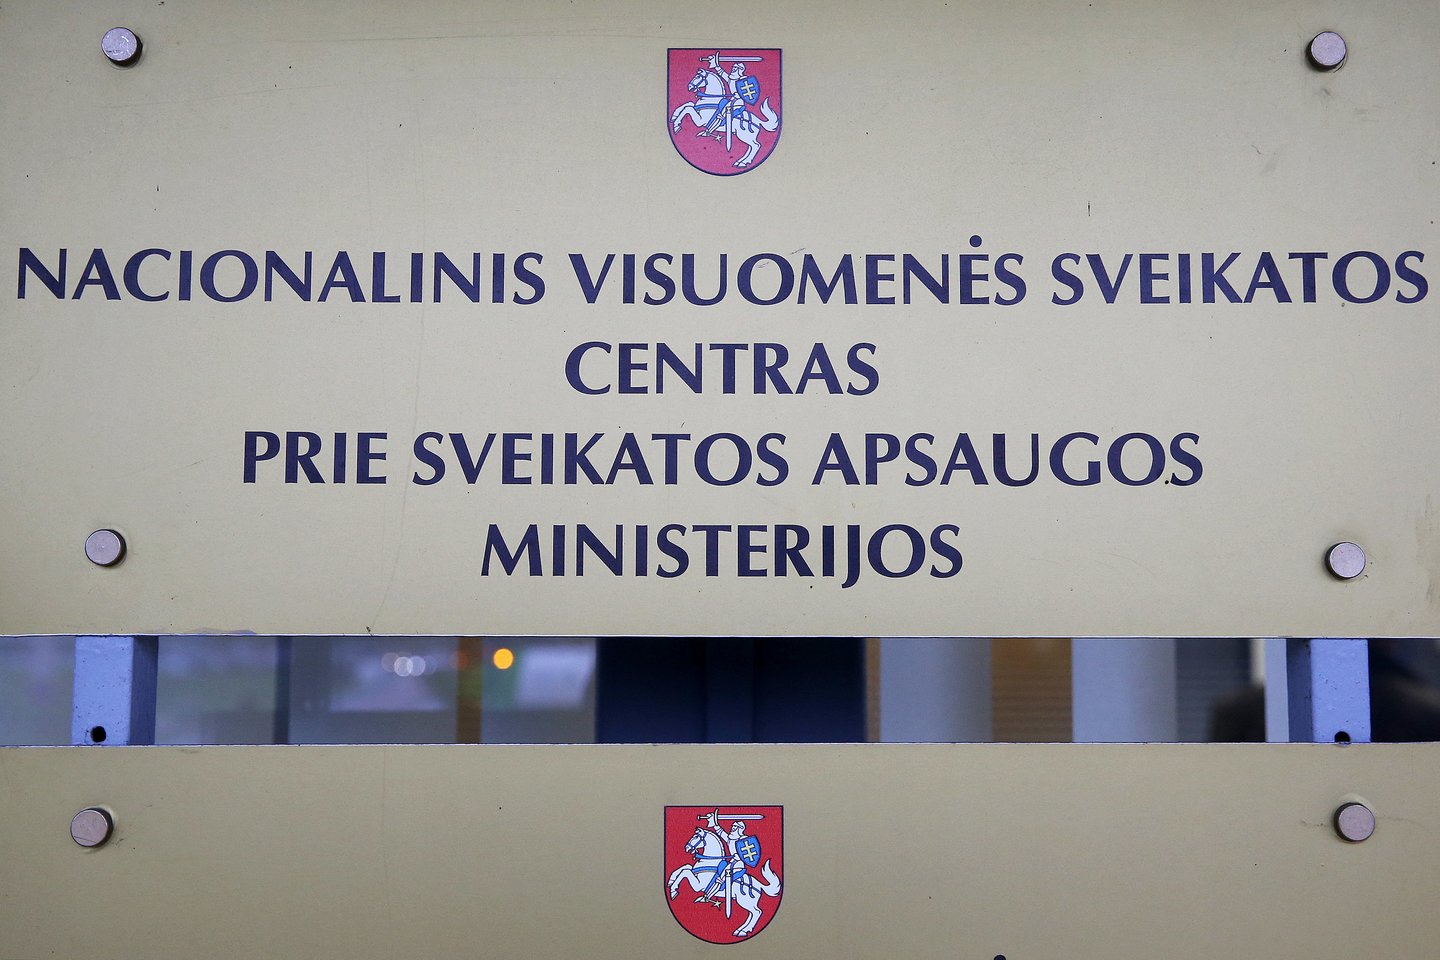 Nacionalinis visuomenės sveikatos centras<br>R.Danisevičiaus nuotr.